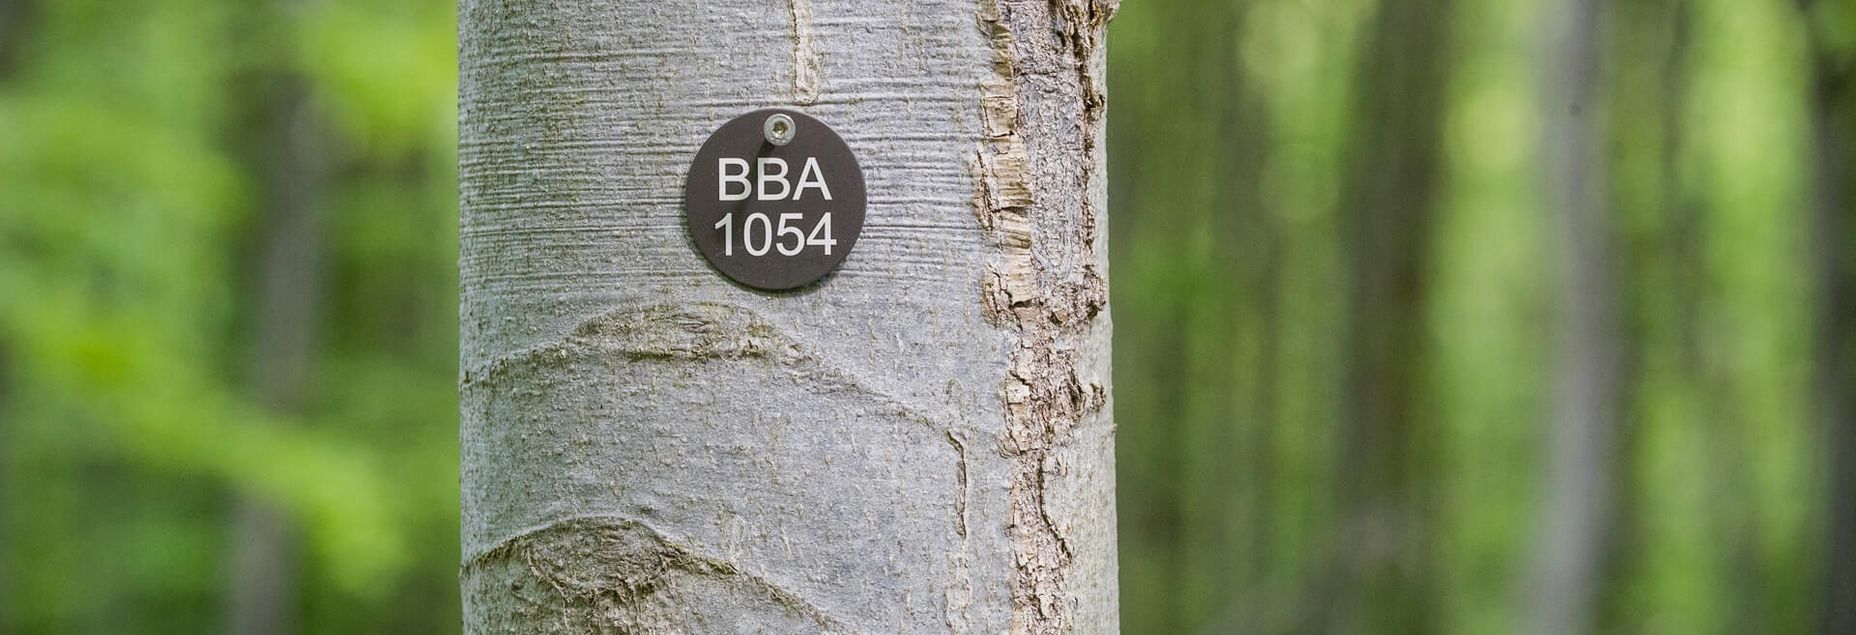 Baum BBA 1054 - Plakette